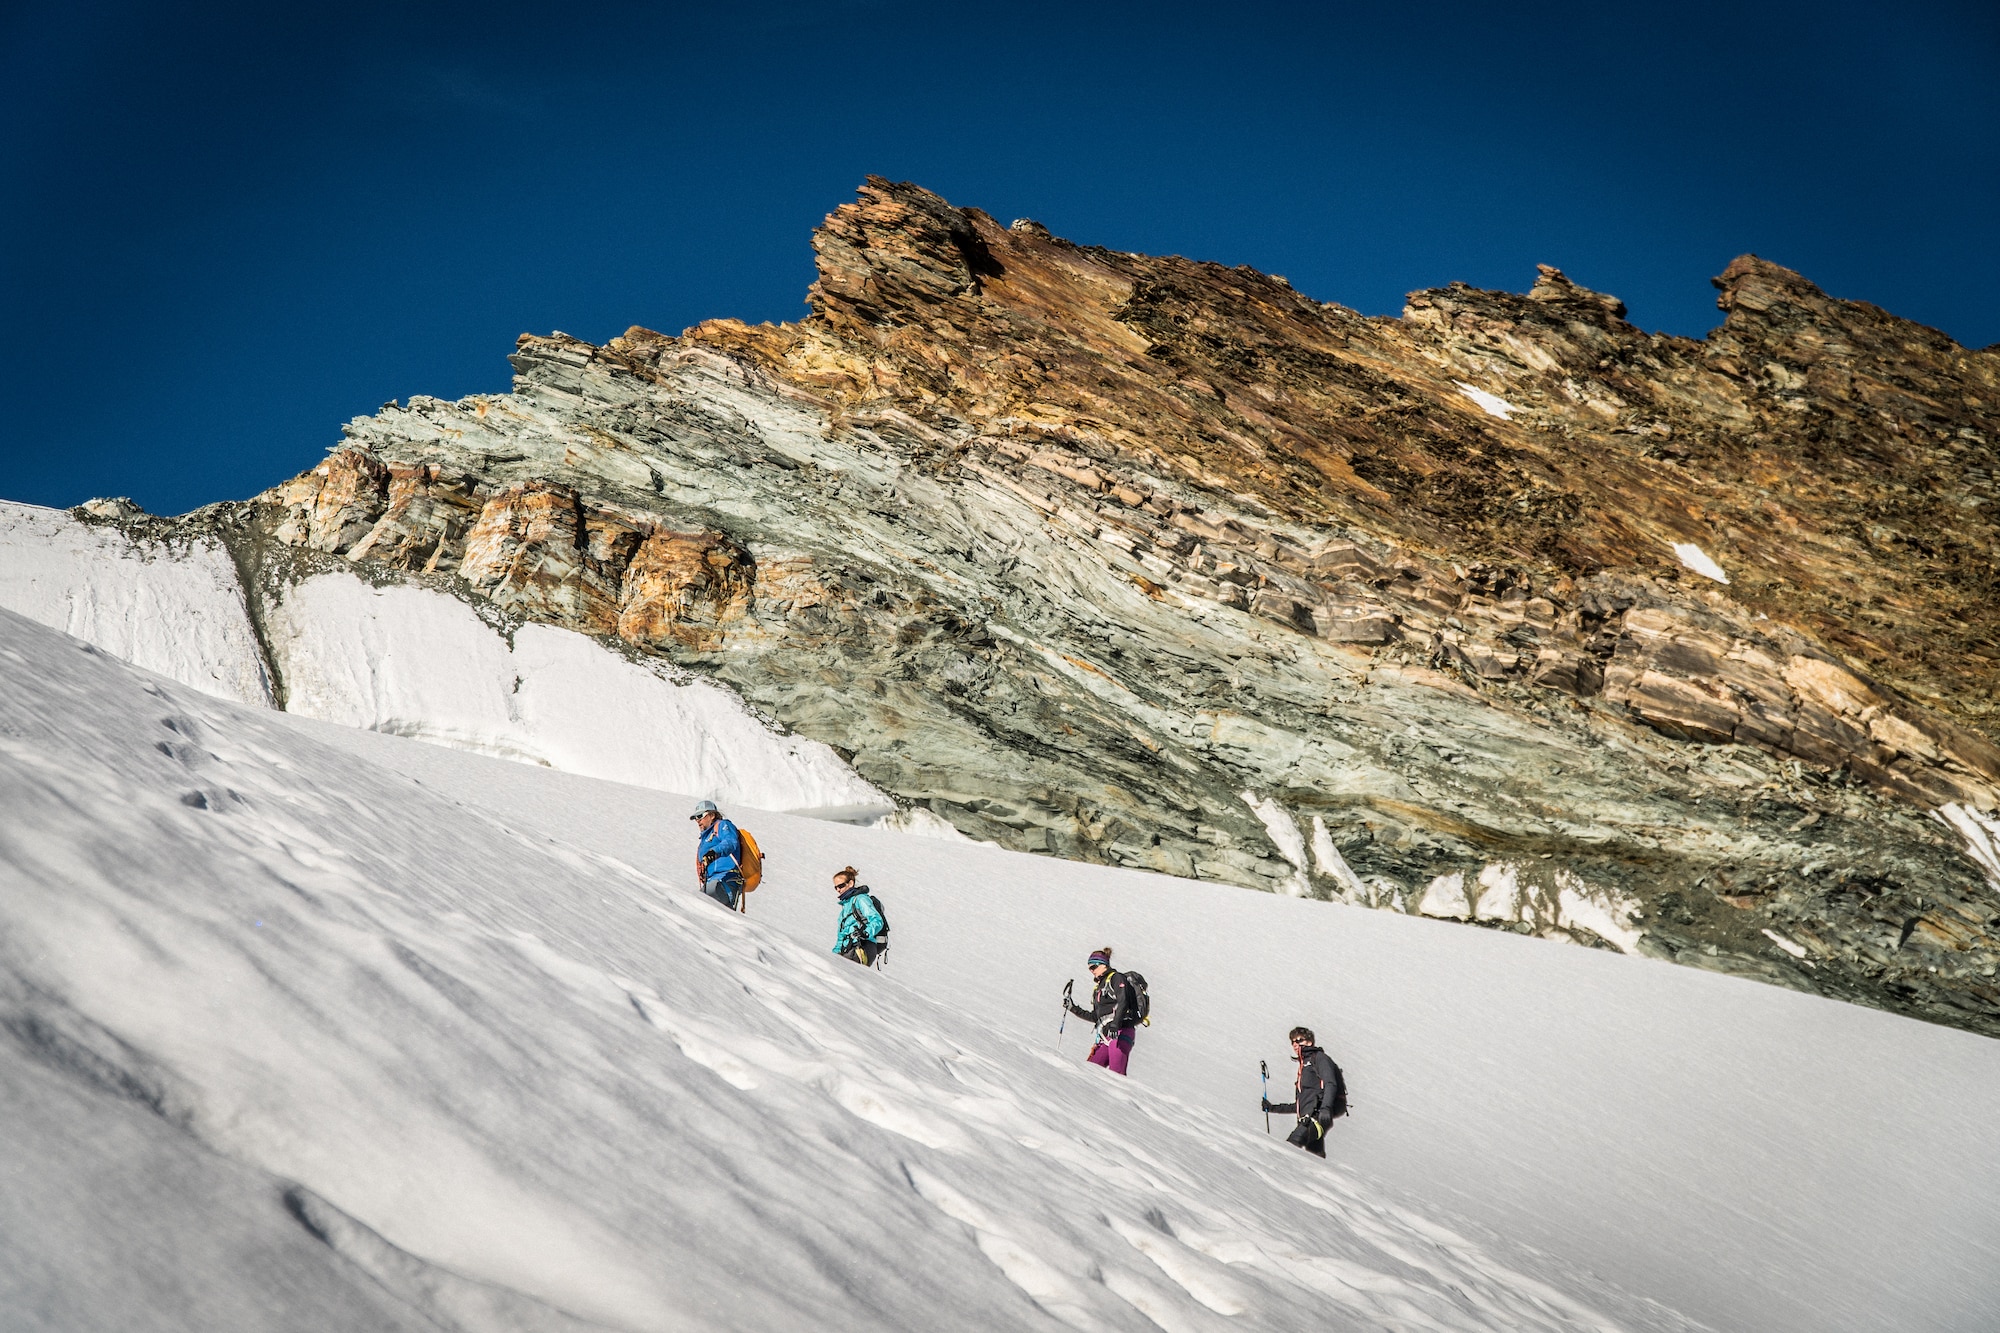 Für die Besteigung eines Viertausenders braucht es einiges an alpinem Wissen und Können